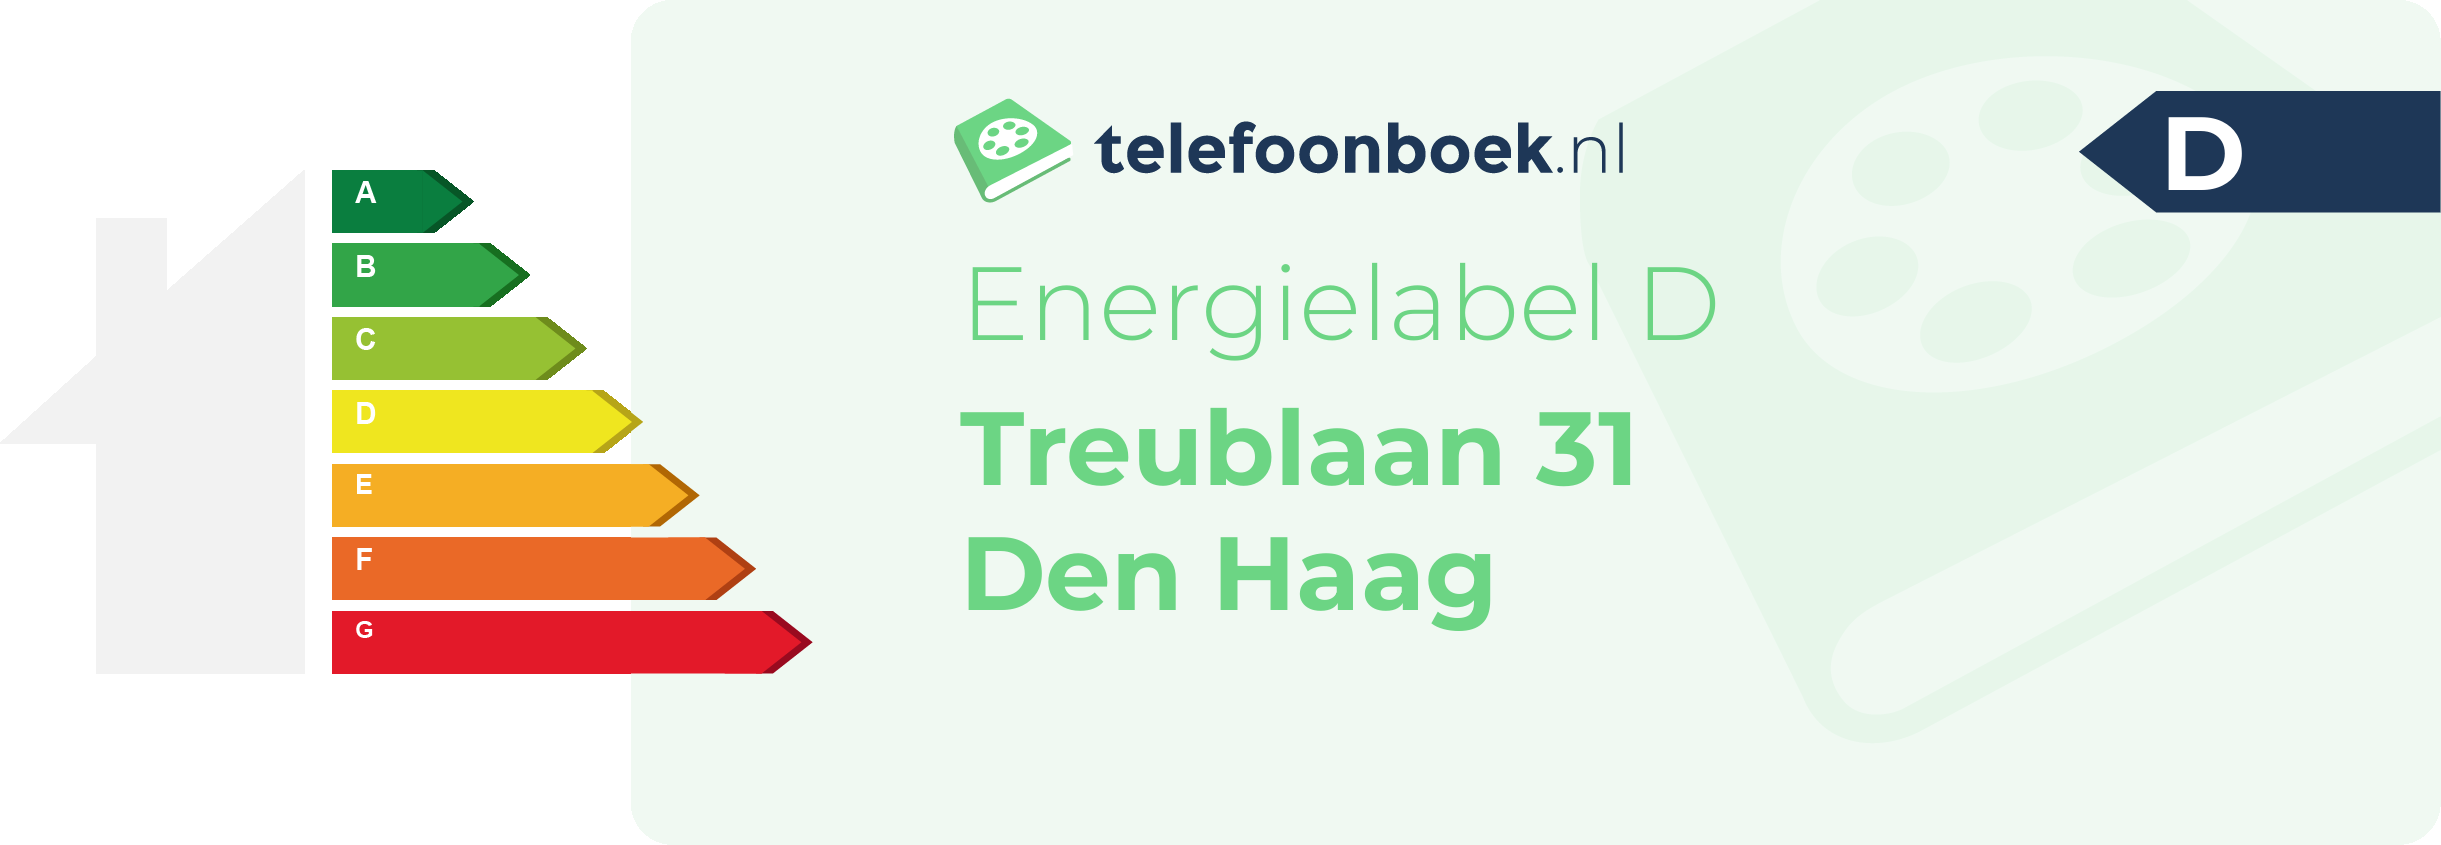 Energielabel Treublaan 31 Den Haag